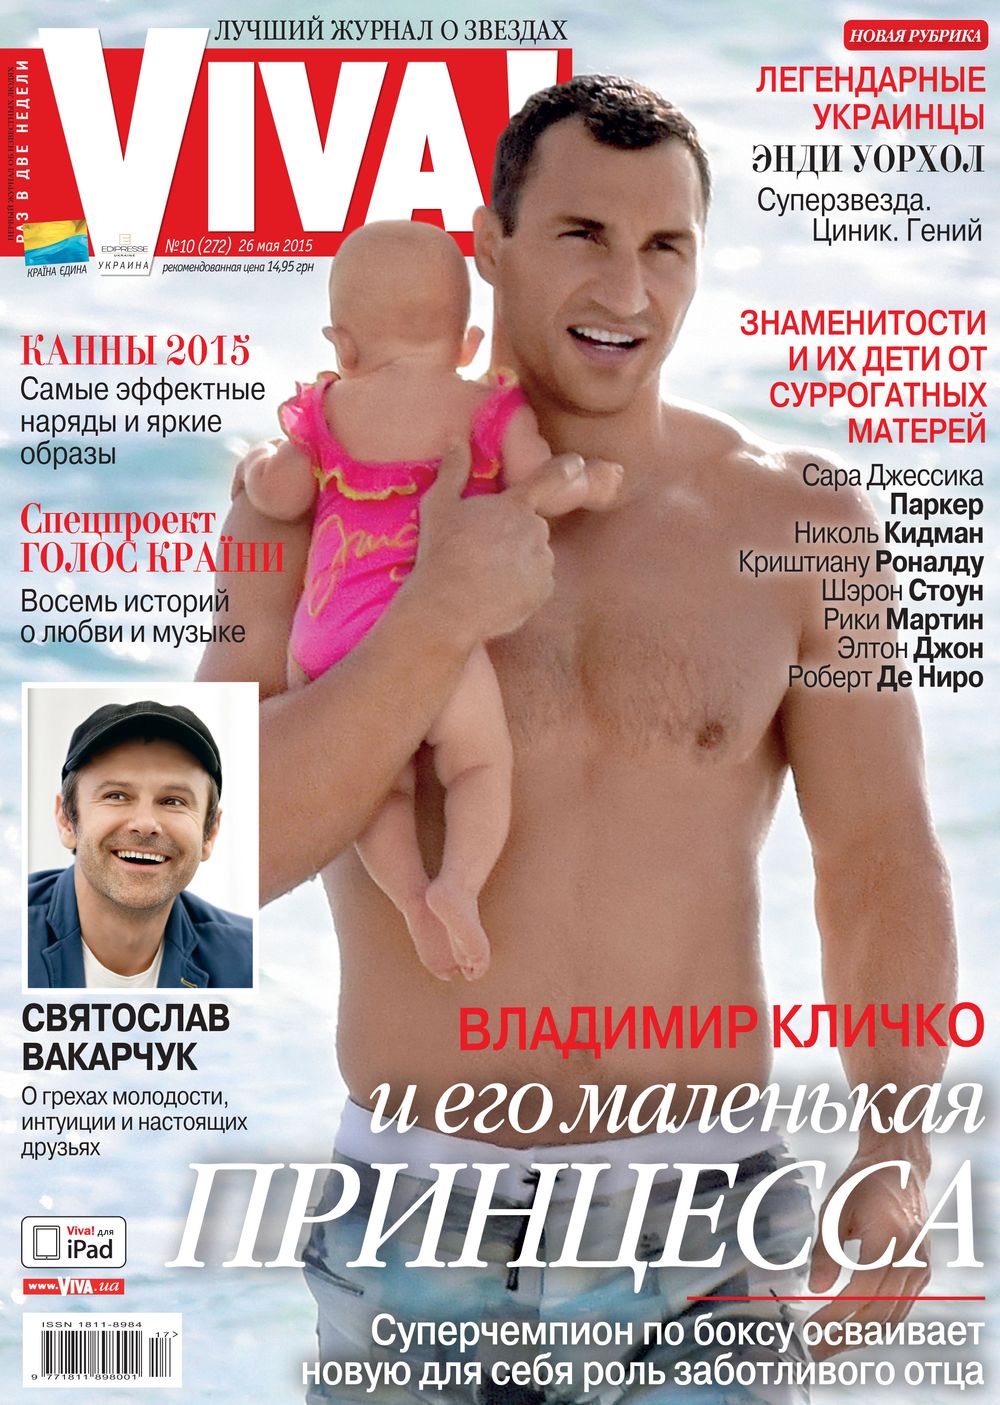 Владимир Кличко и его дочь Кайя